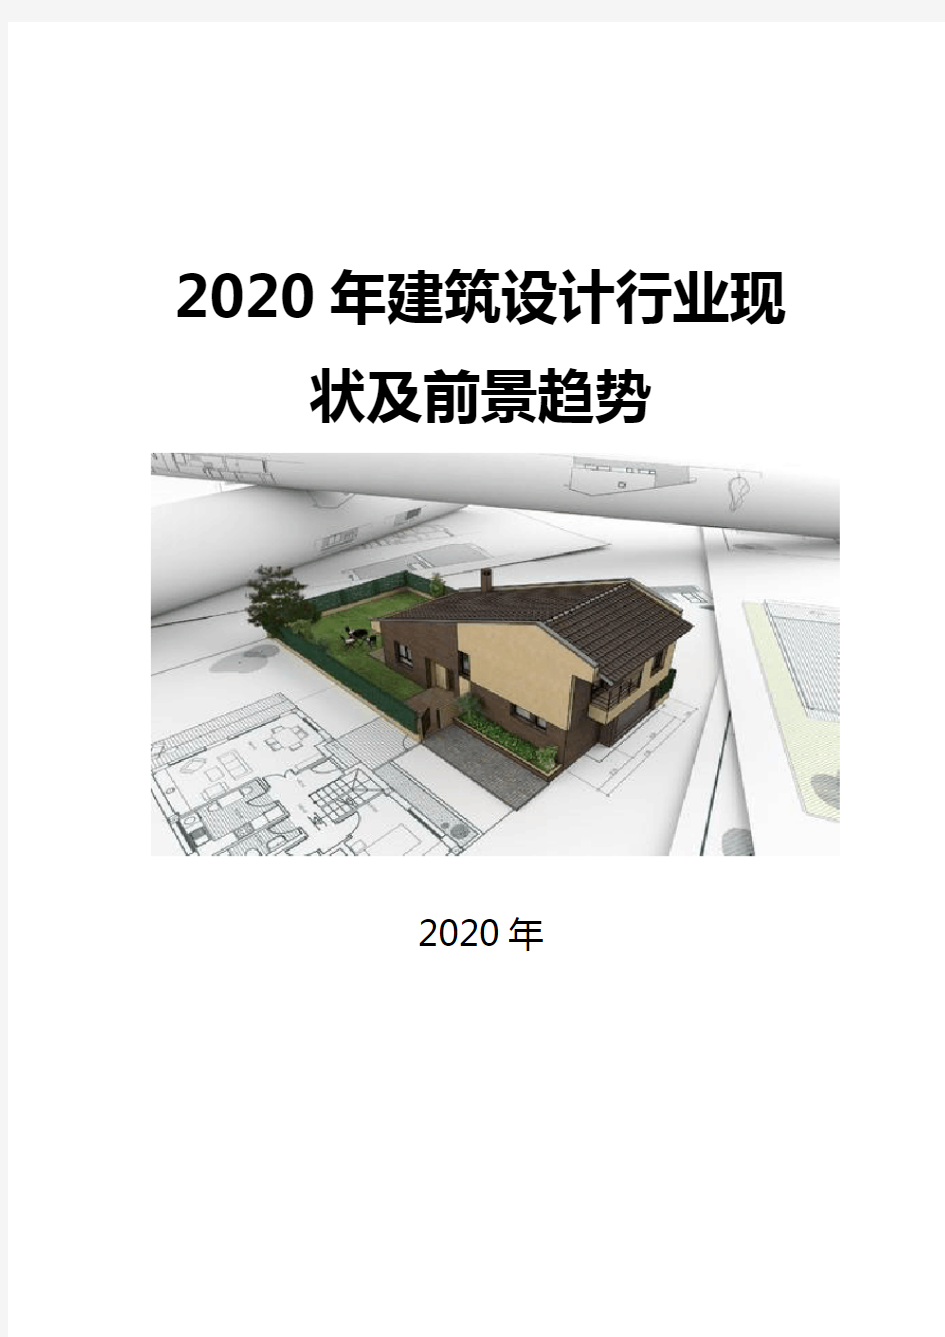 2020建筑设计行业现状及前景趋势